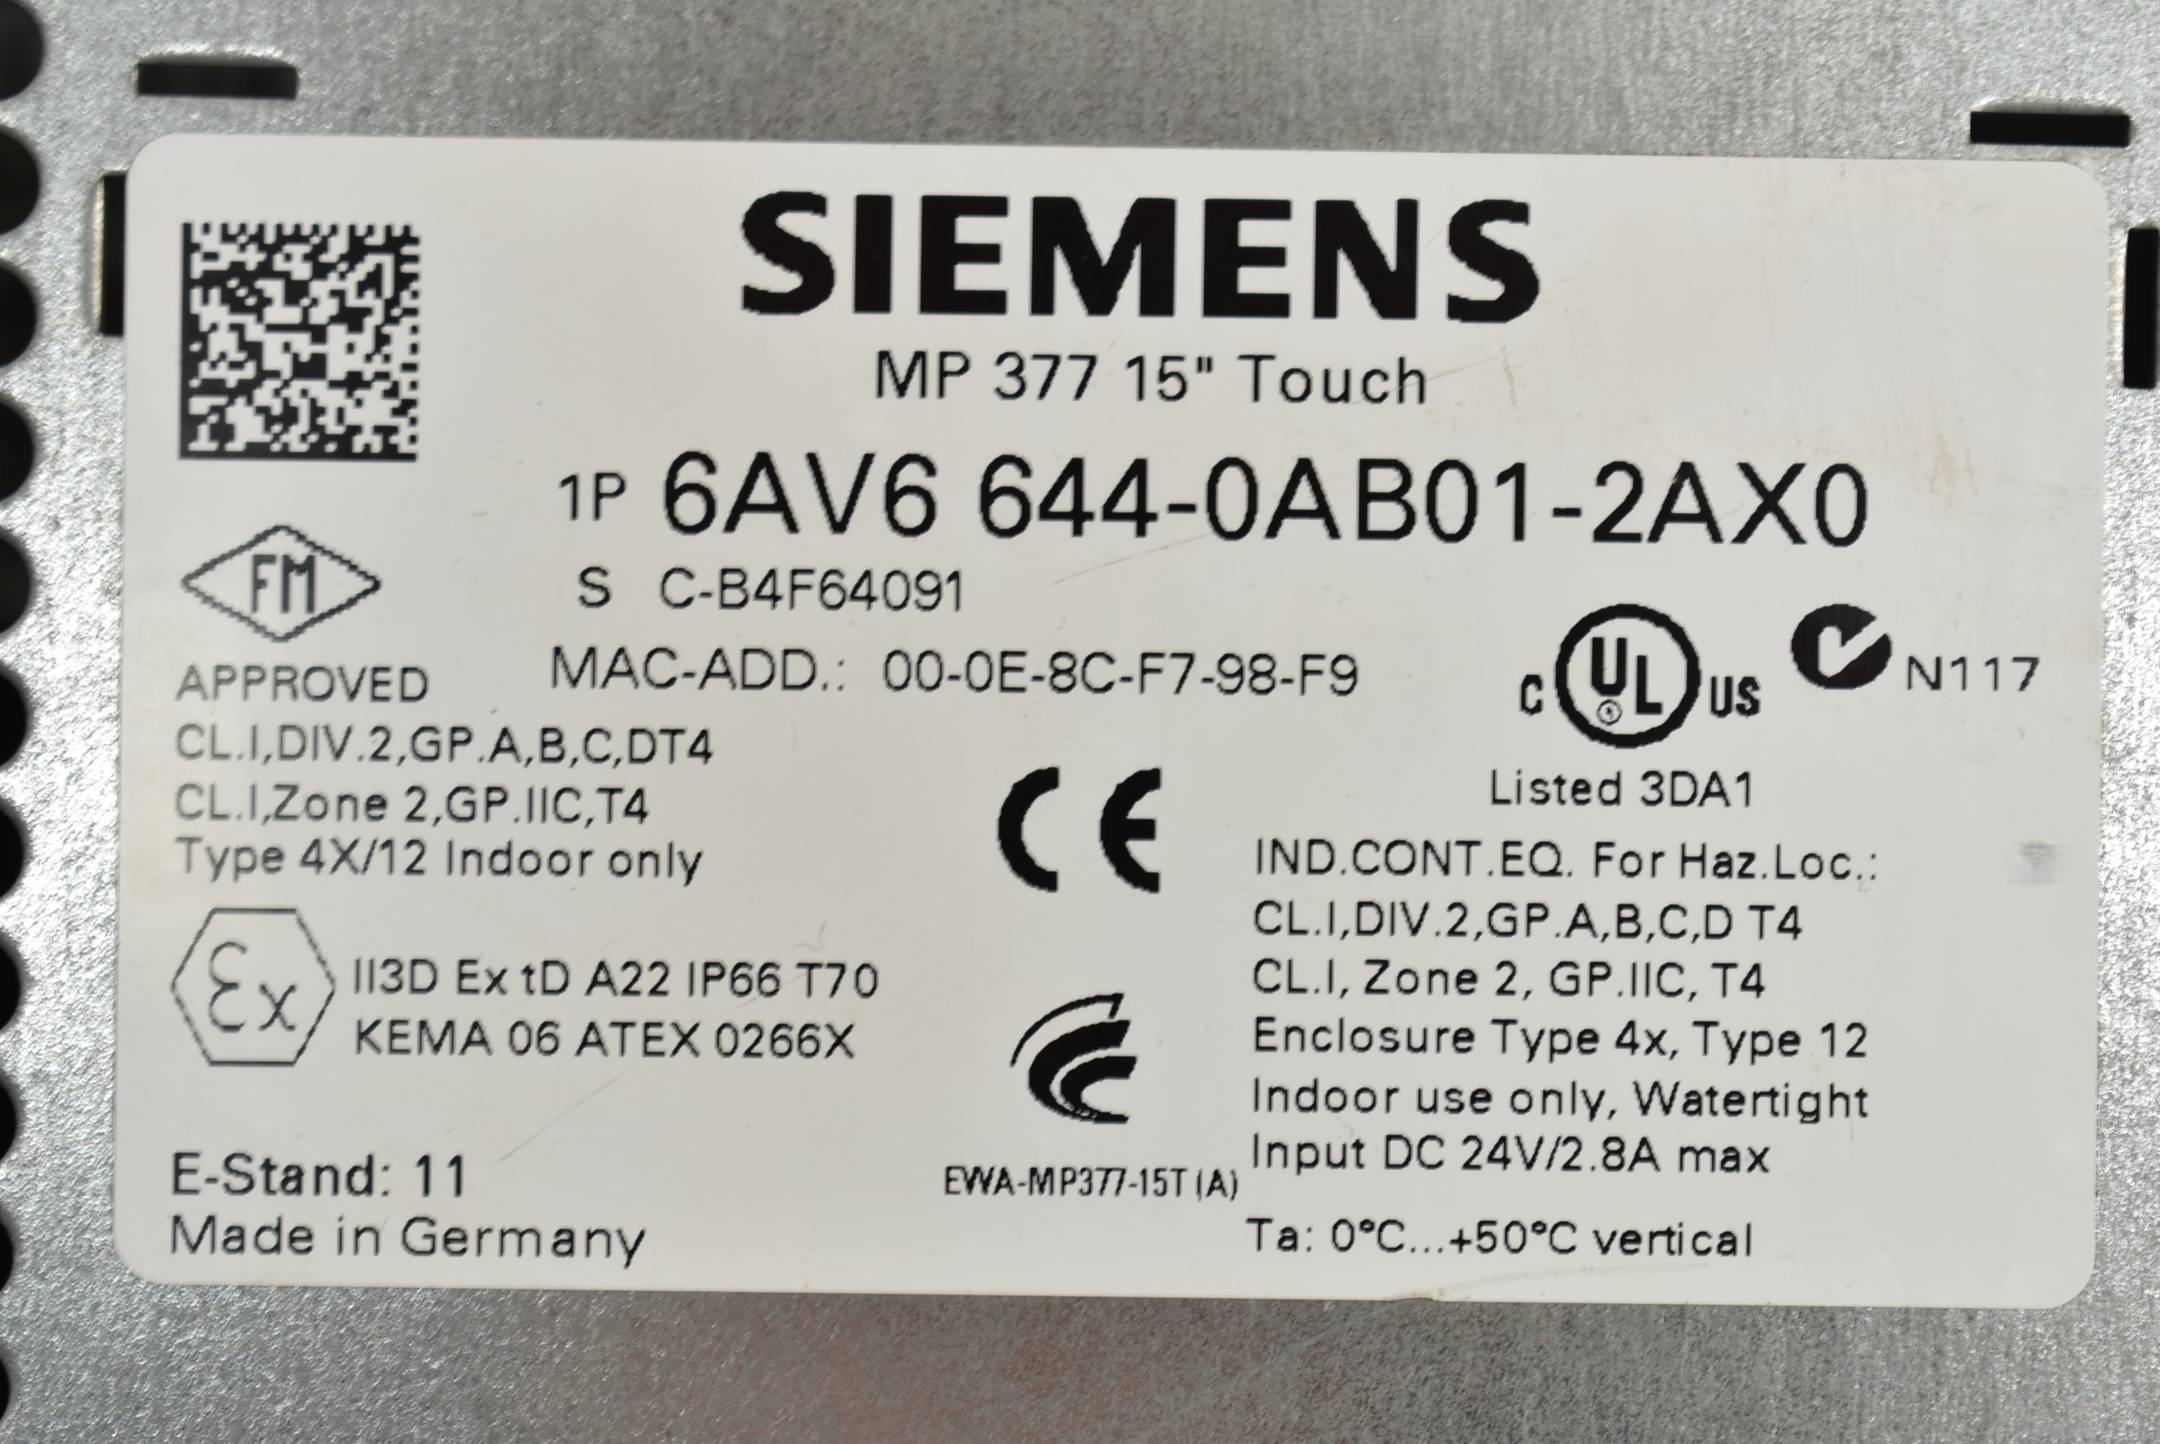 Siemens MP 377 15" Touch 6AV6 644-0AB01-2AX0 ( 6AV6644-0AB01-2AX0 ) E 11